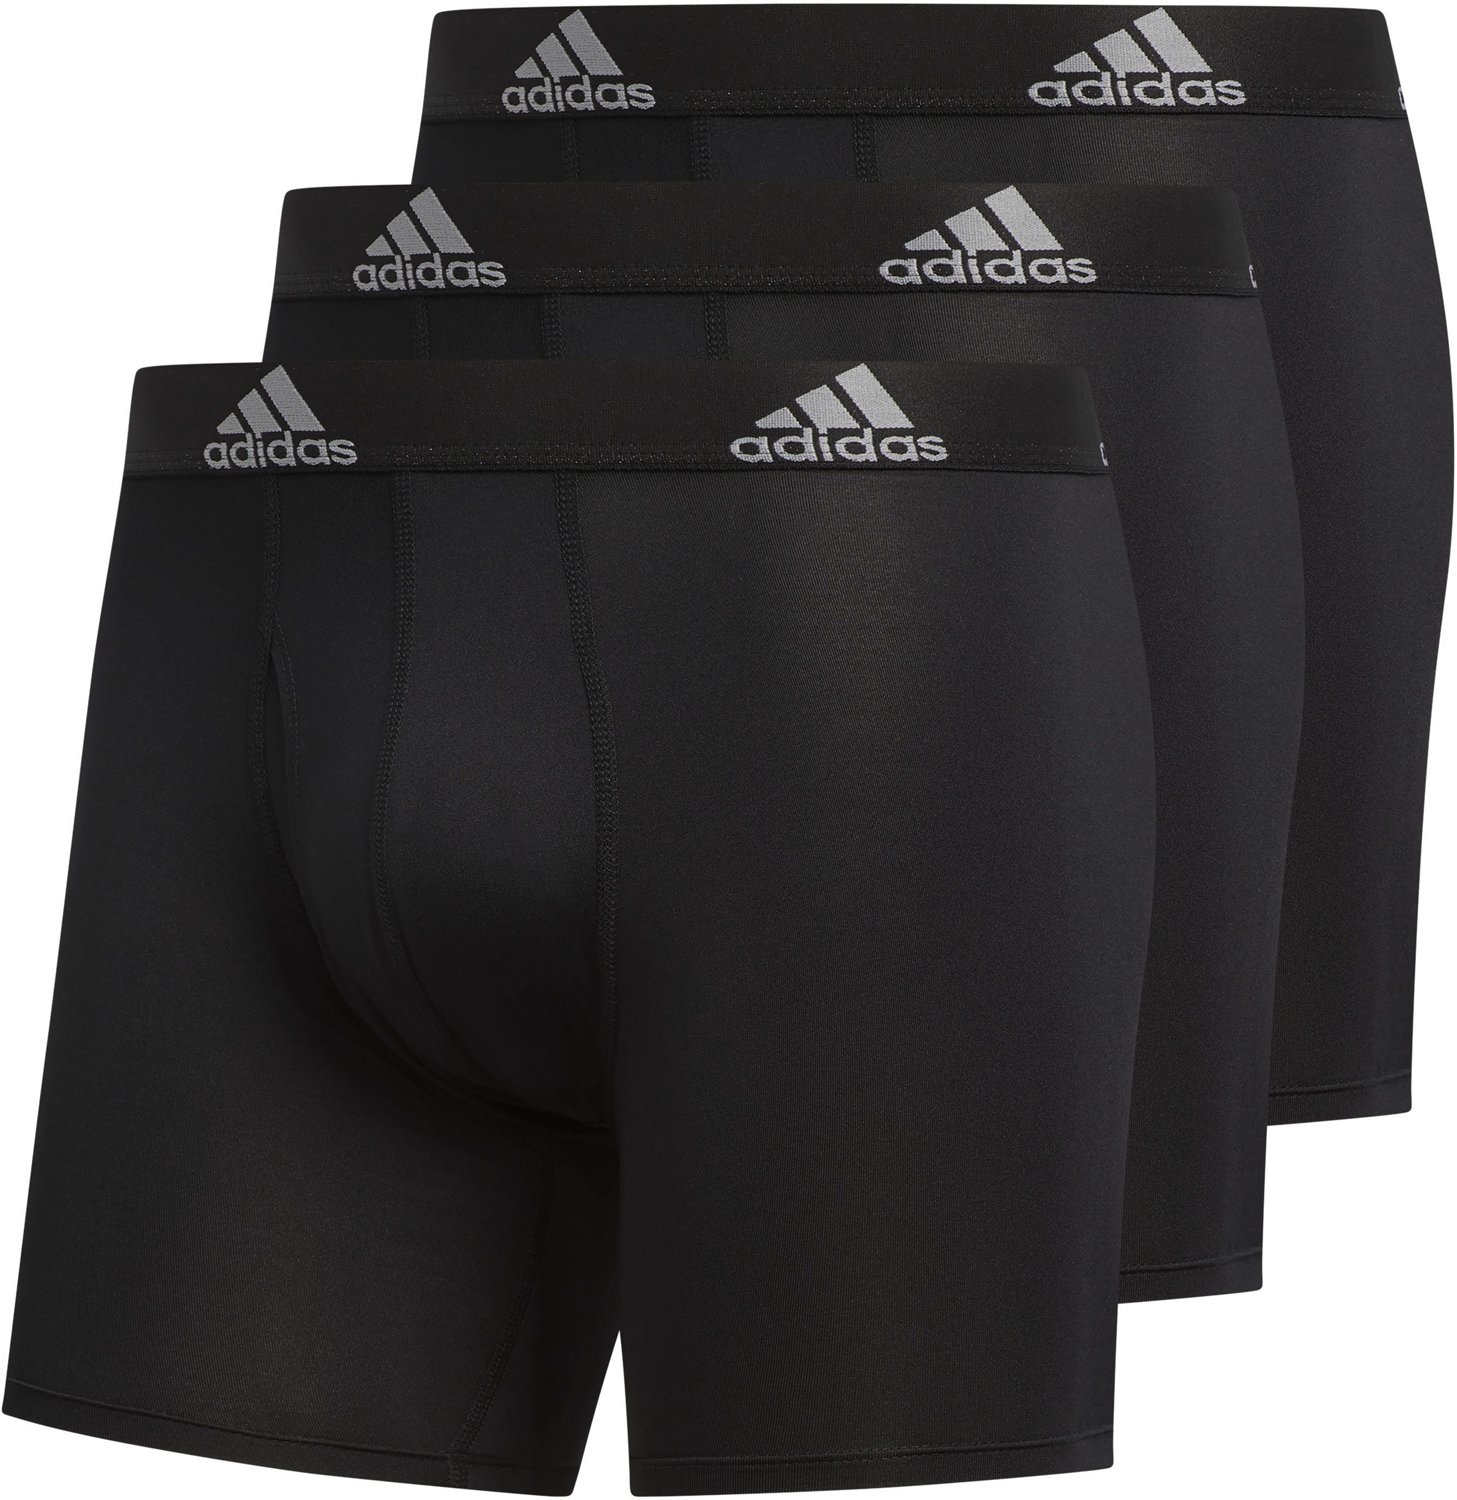 adidas men's sport performance climalite workout underwear